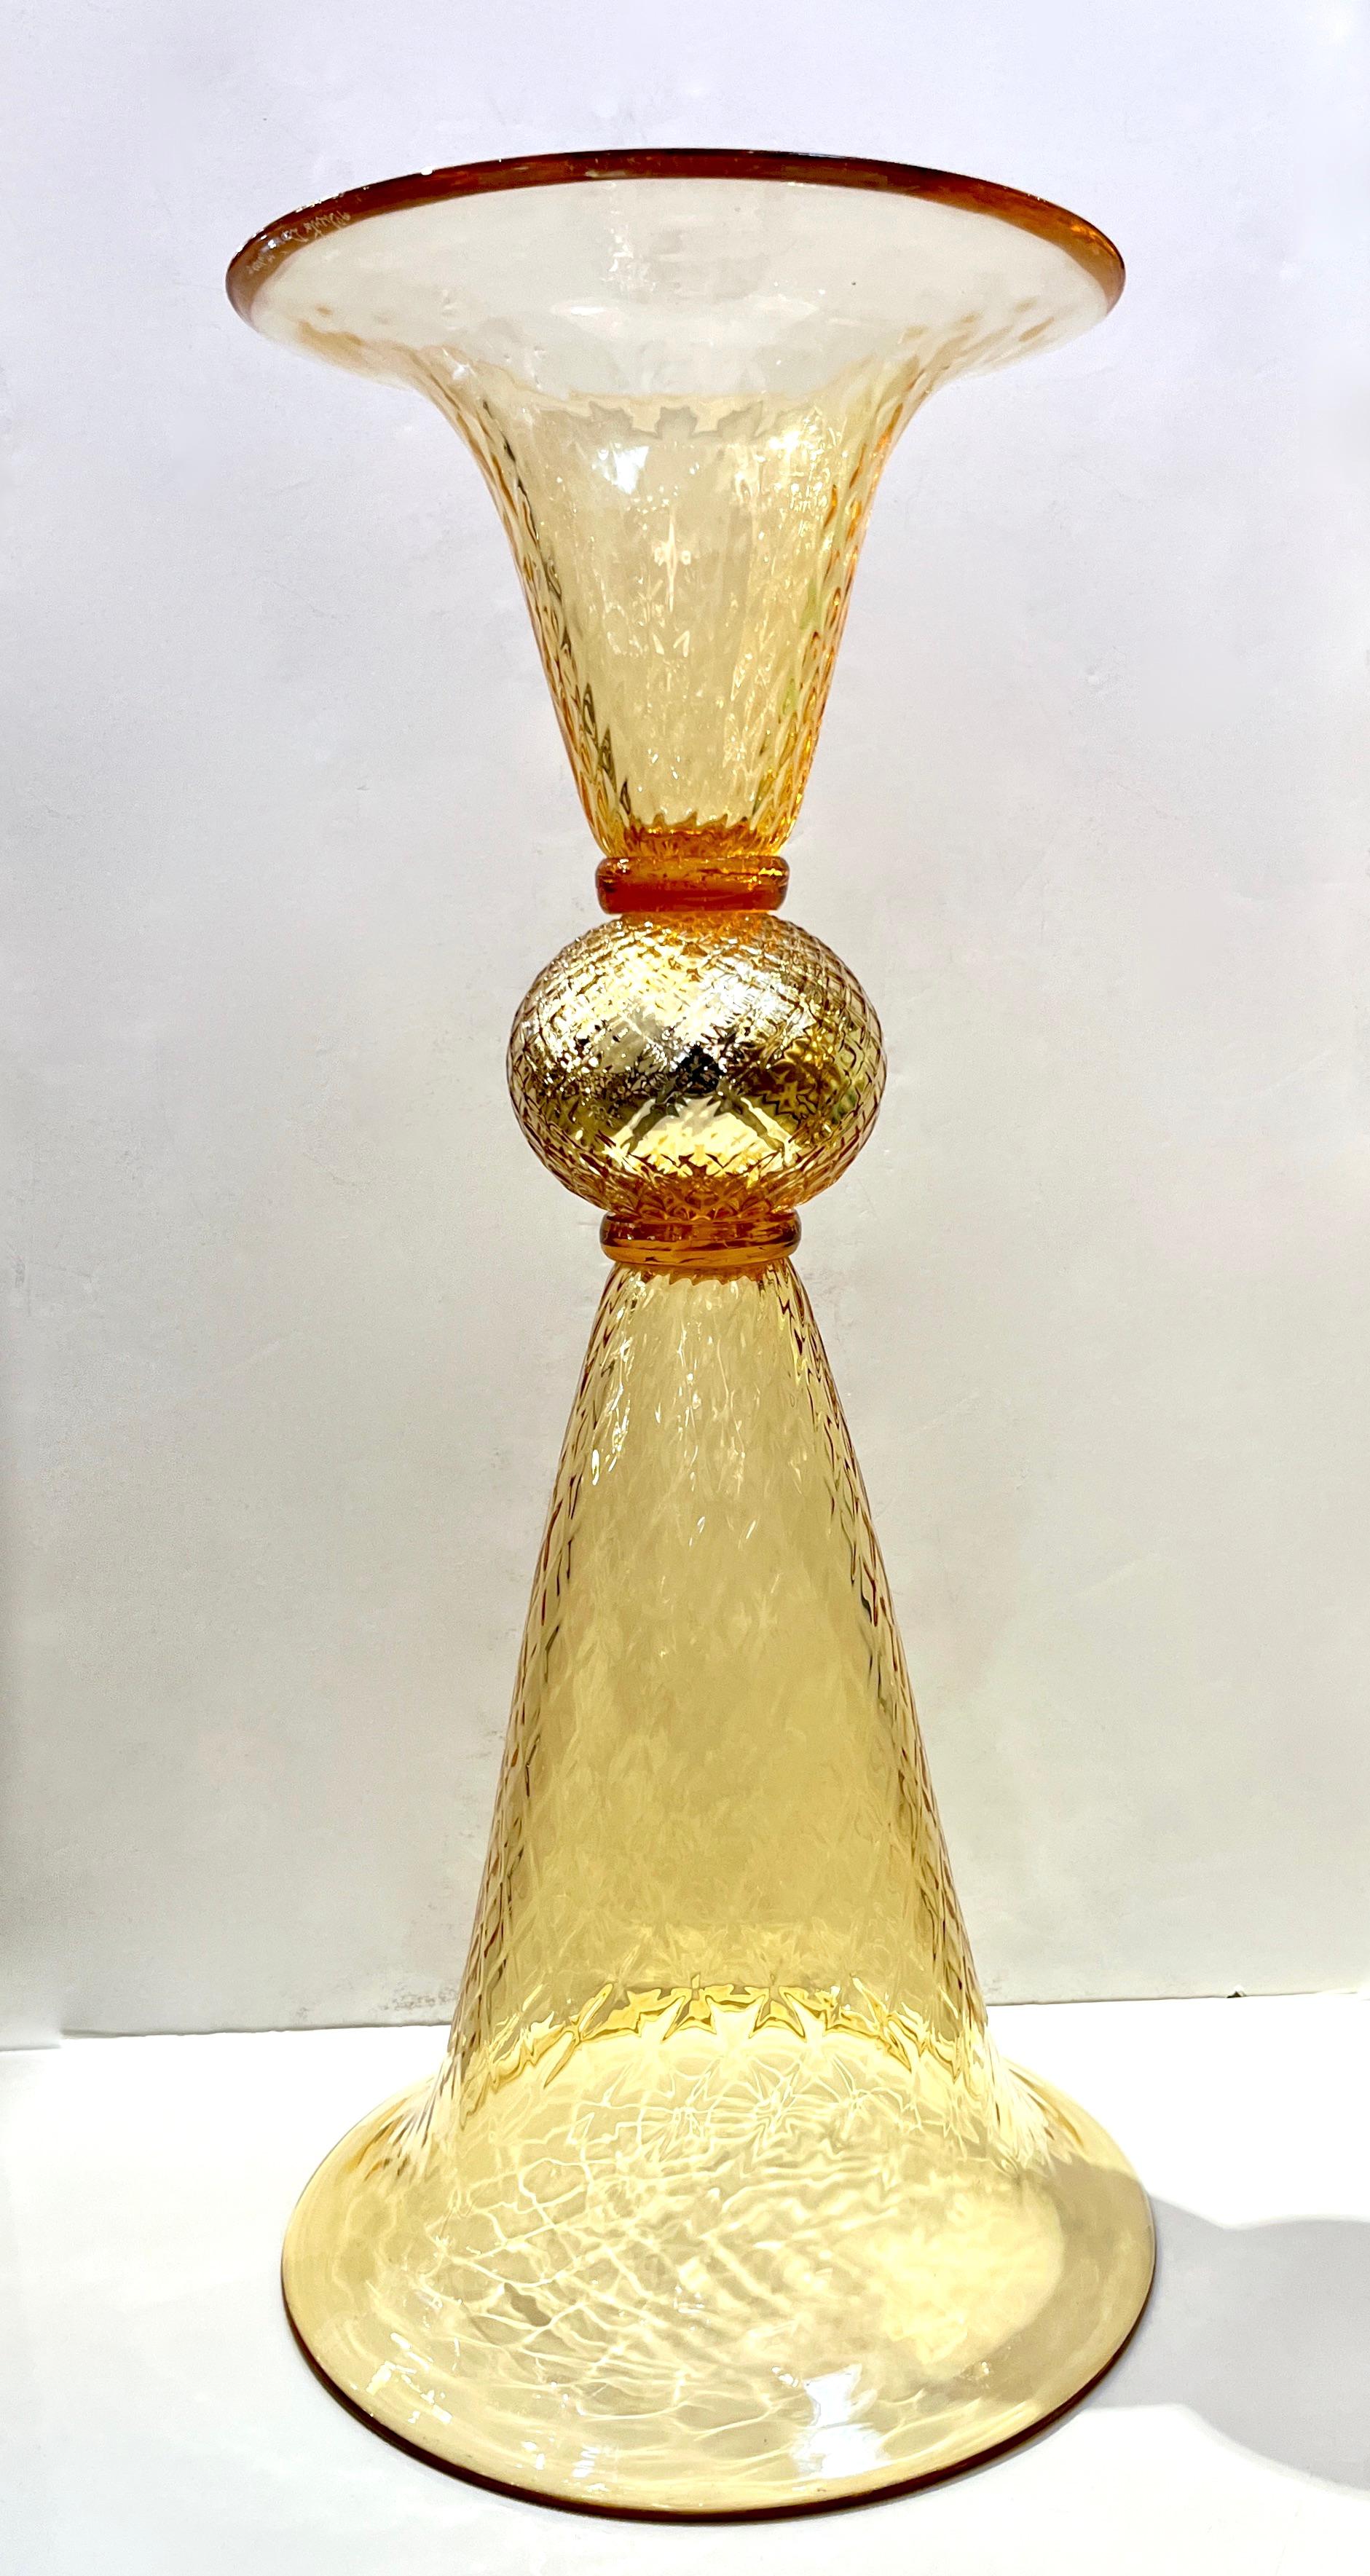 Vase contemporain des Arts décoratifs vénitiens en or, en verre soufflé de Murano, travaillé à l'or pur 24k, une partie plus allongée que l'autre et les deux pouvant faire office de socle. Les corps sont tous deux en verre texturé avec un motif en